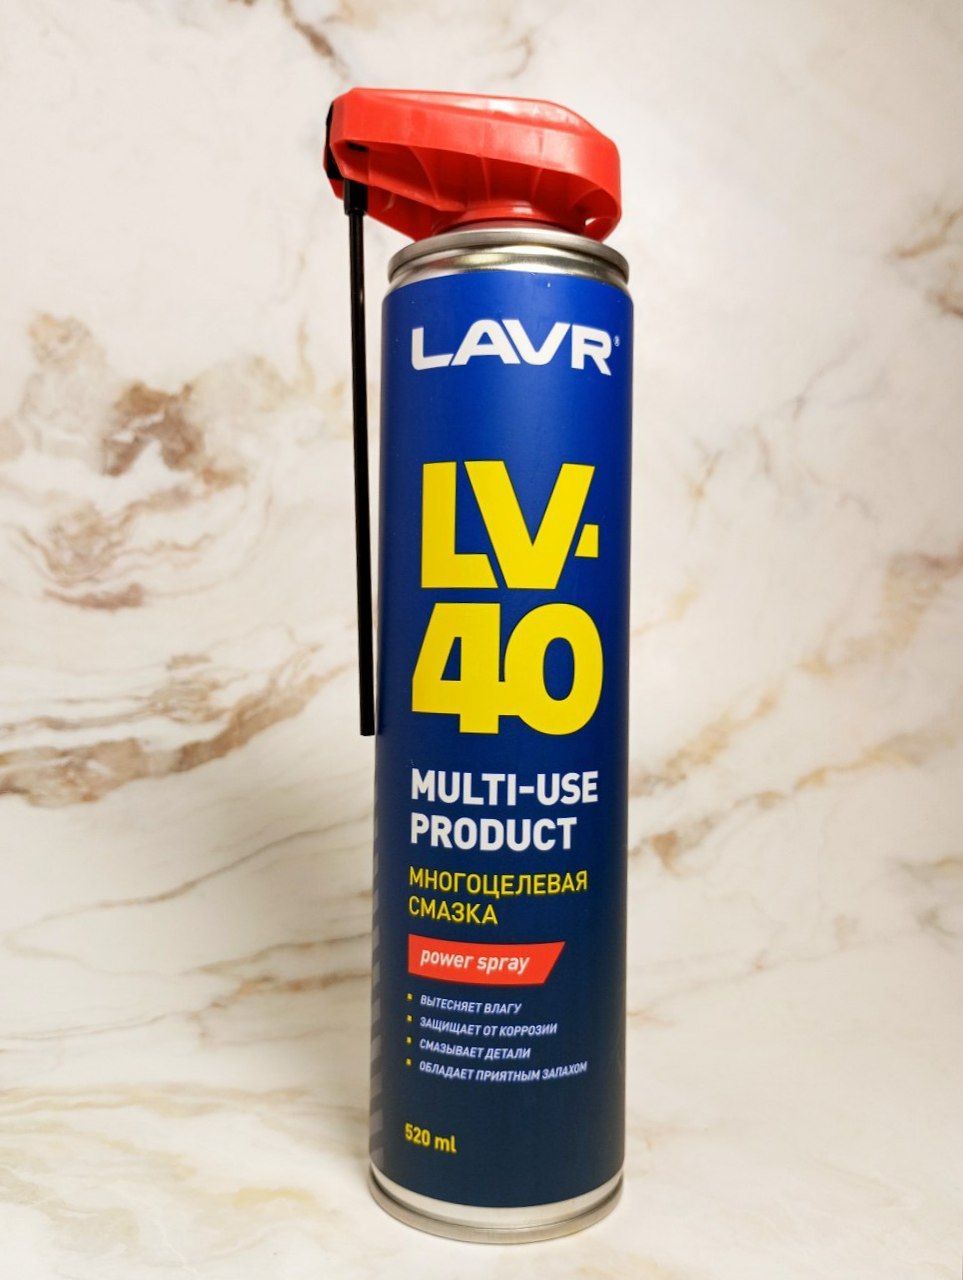 LAVR LV-40 Multipurpose Spray Многоцелевая смазка аэрозольная 520 мл